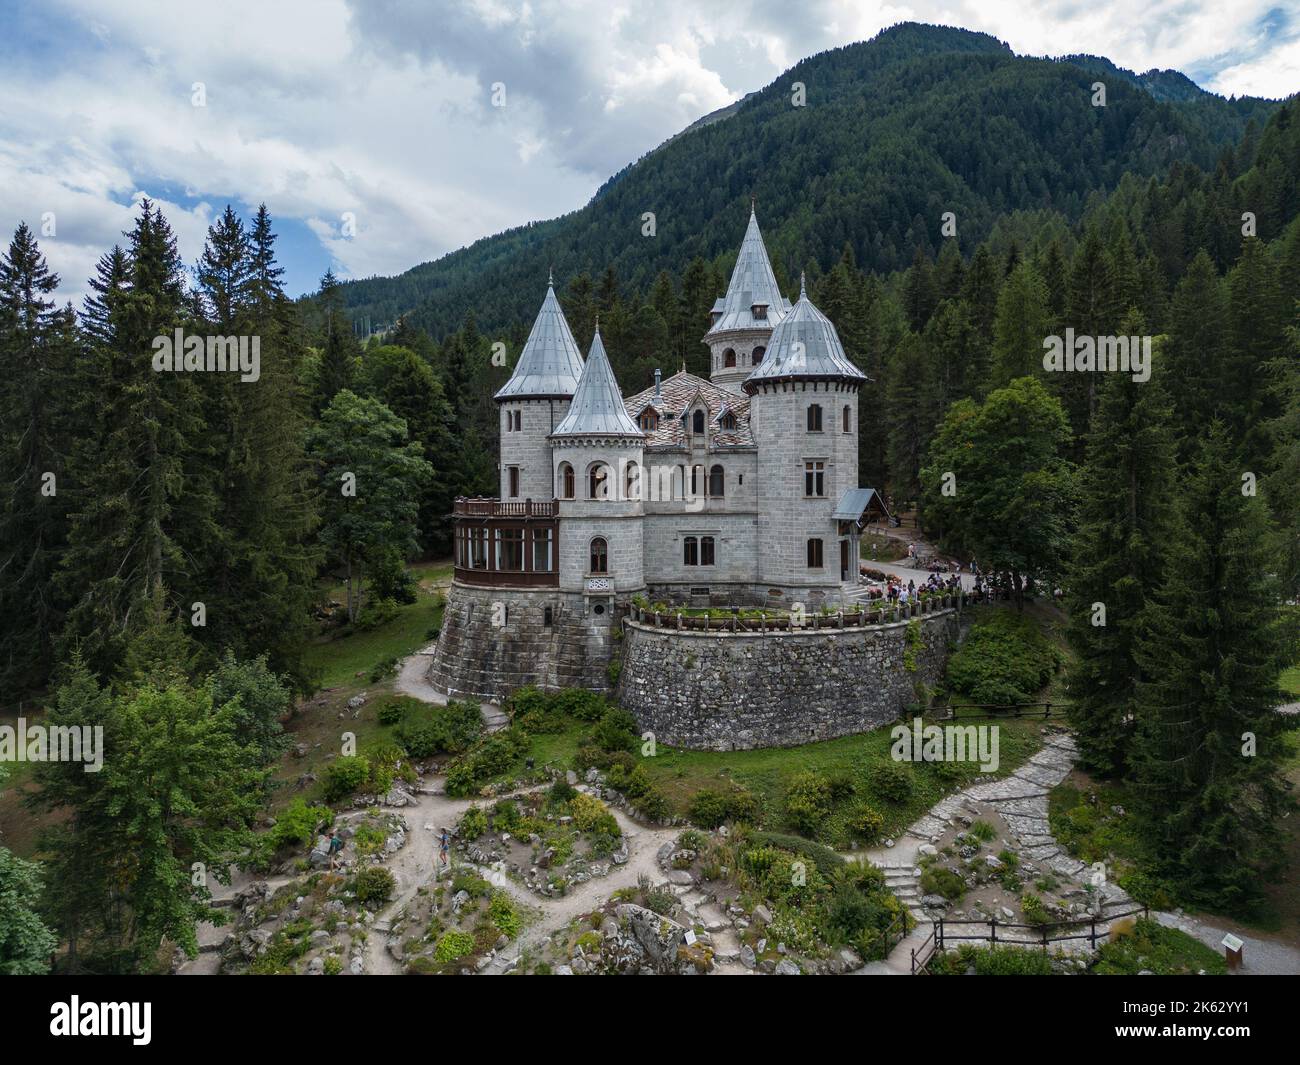 Une vue magnifique sur le château de Savoie à Gressoney-Saint-Jean, en Italie Banque D'Images